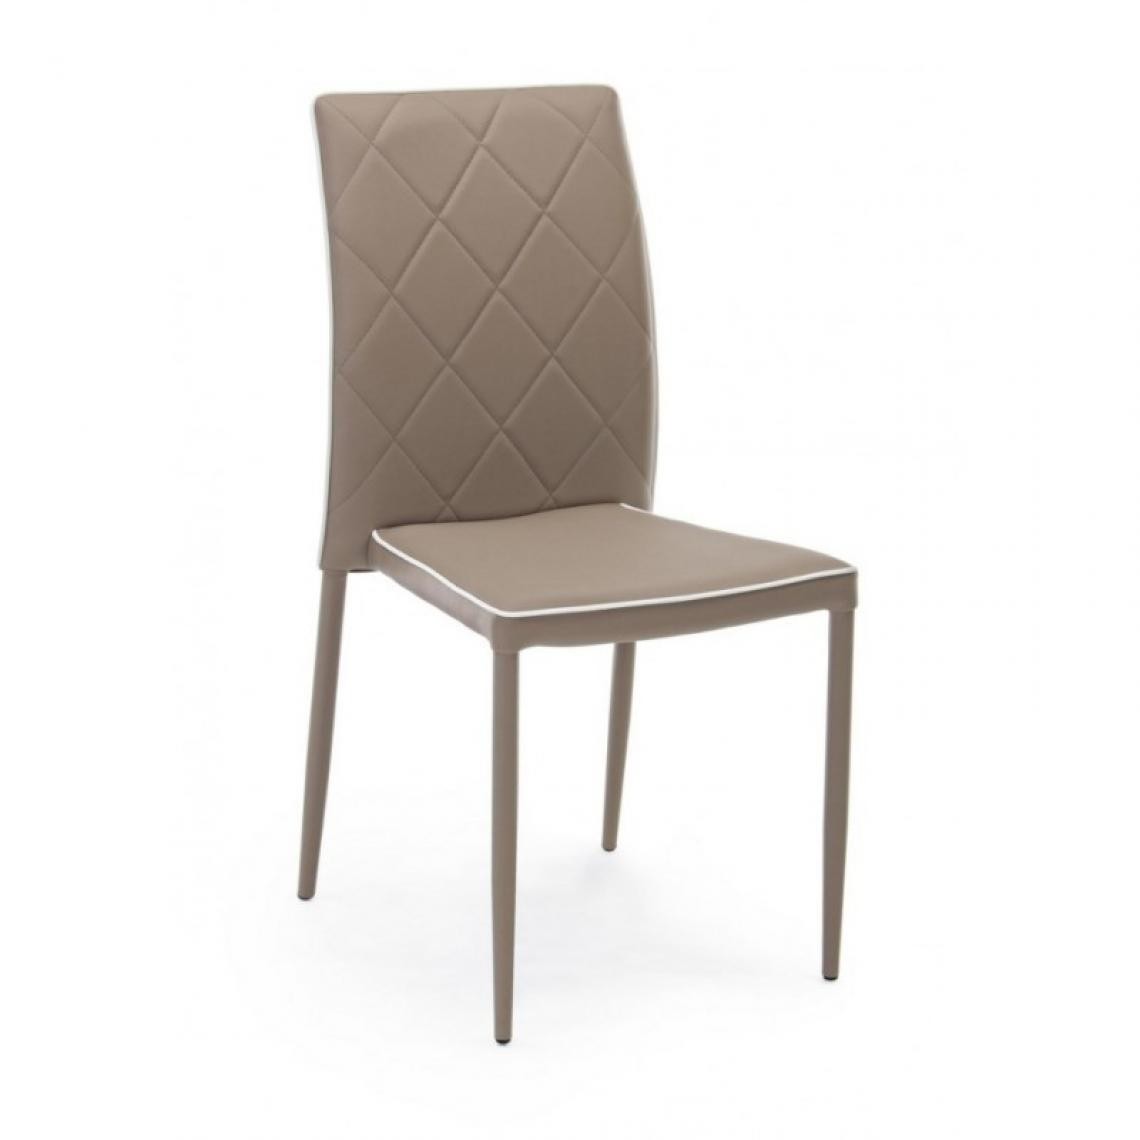 Webmarketpoint - Chaise moderne en similicuir gris tourterelle - Chaises